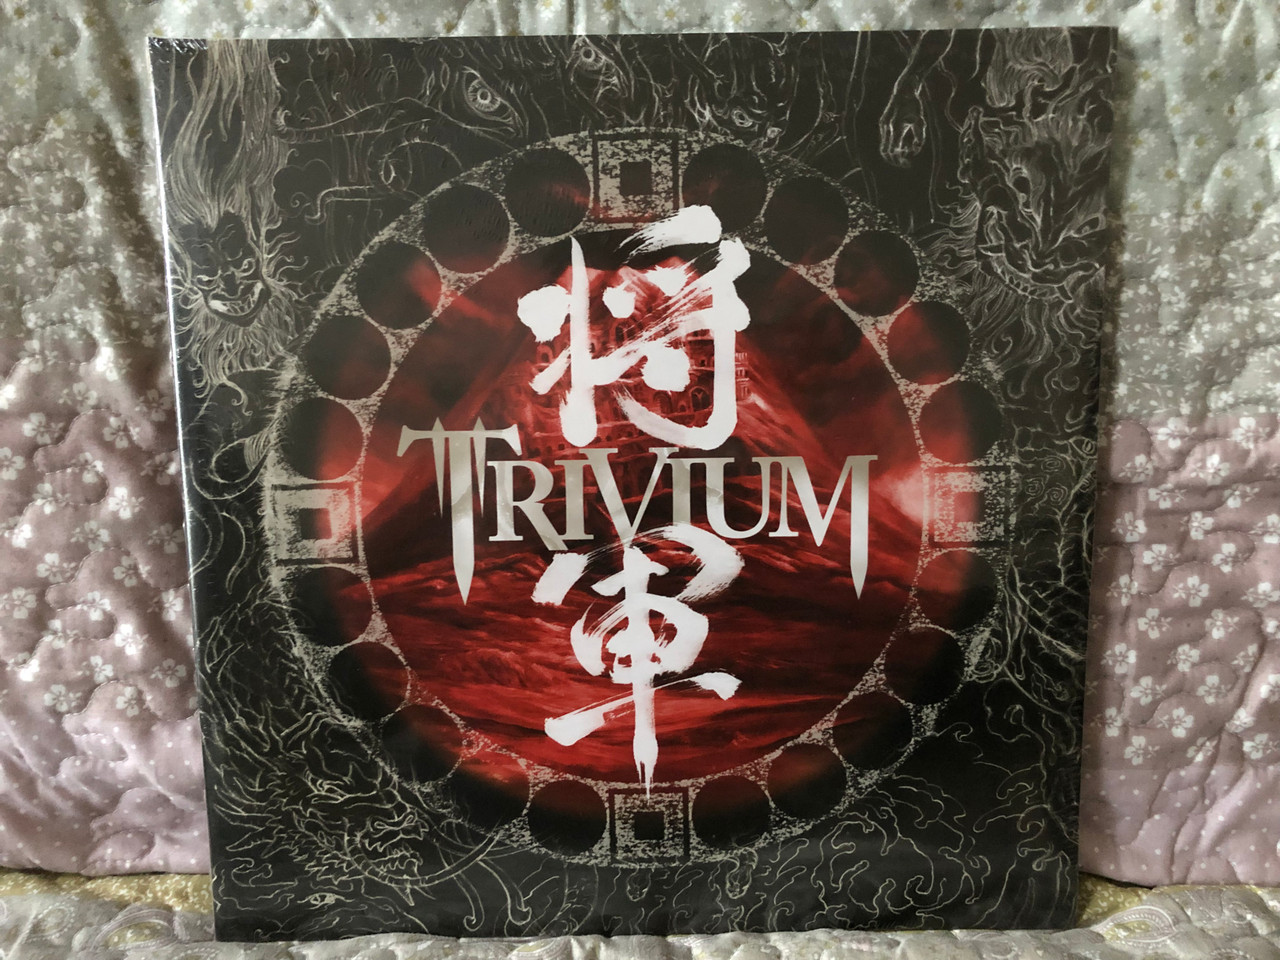 Trivium – Shogun / Roadrunner Records 2x LP 2018 / RR 7985-3 -  bibleinmylanguage